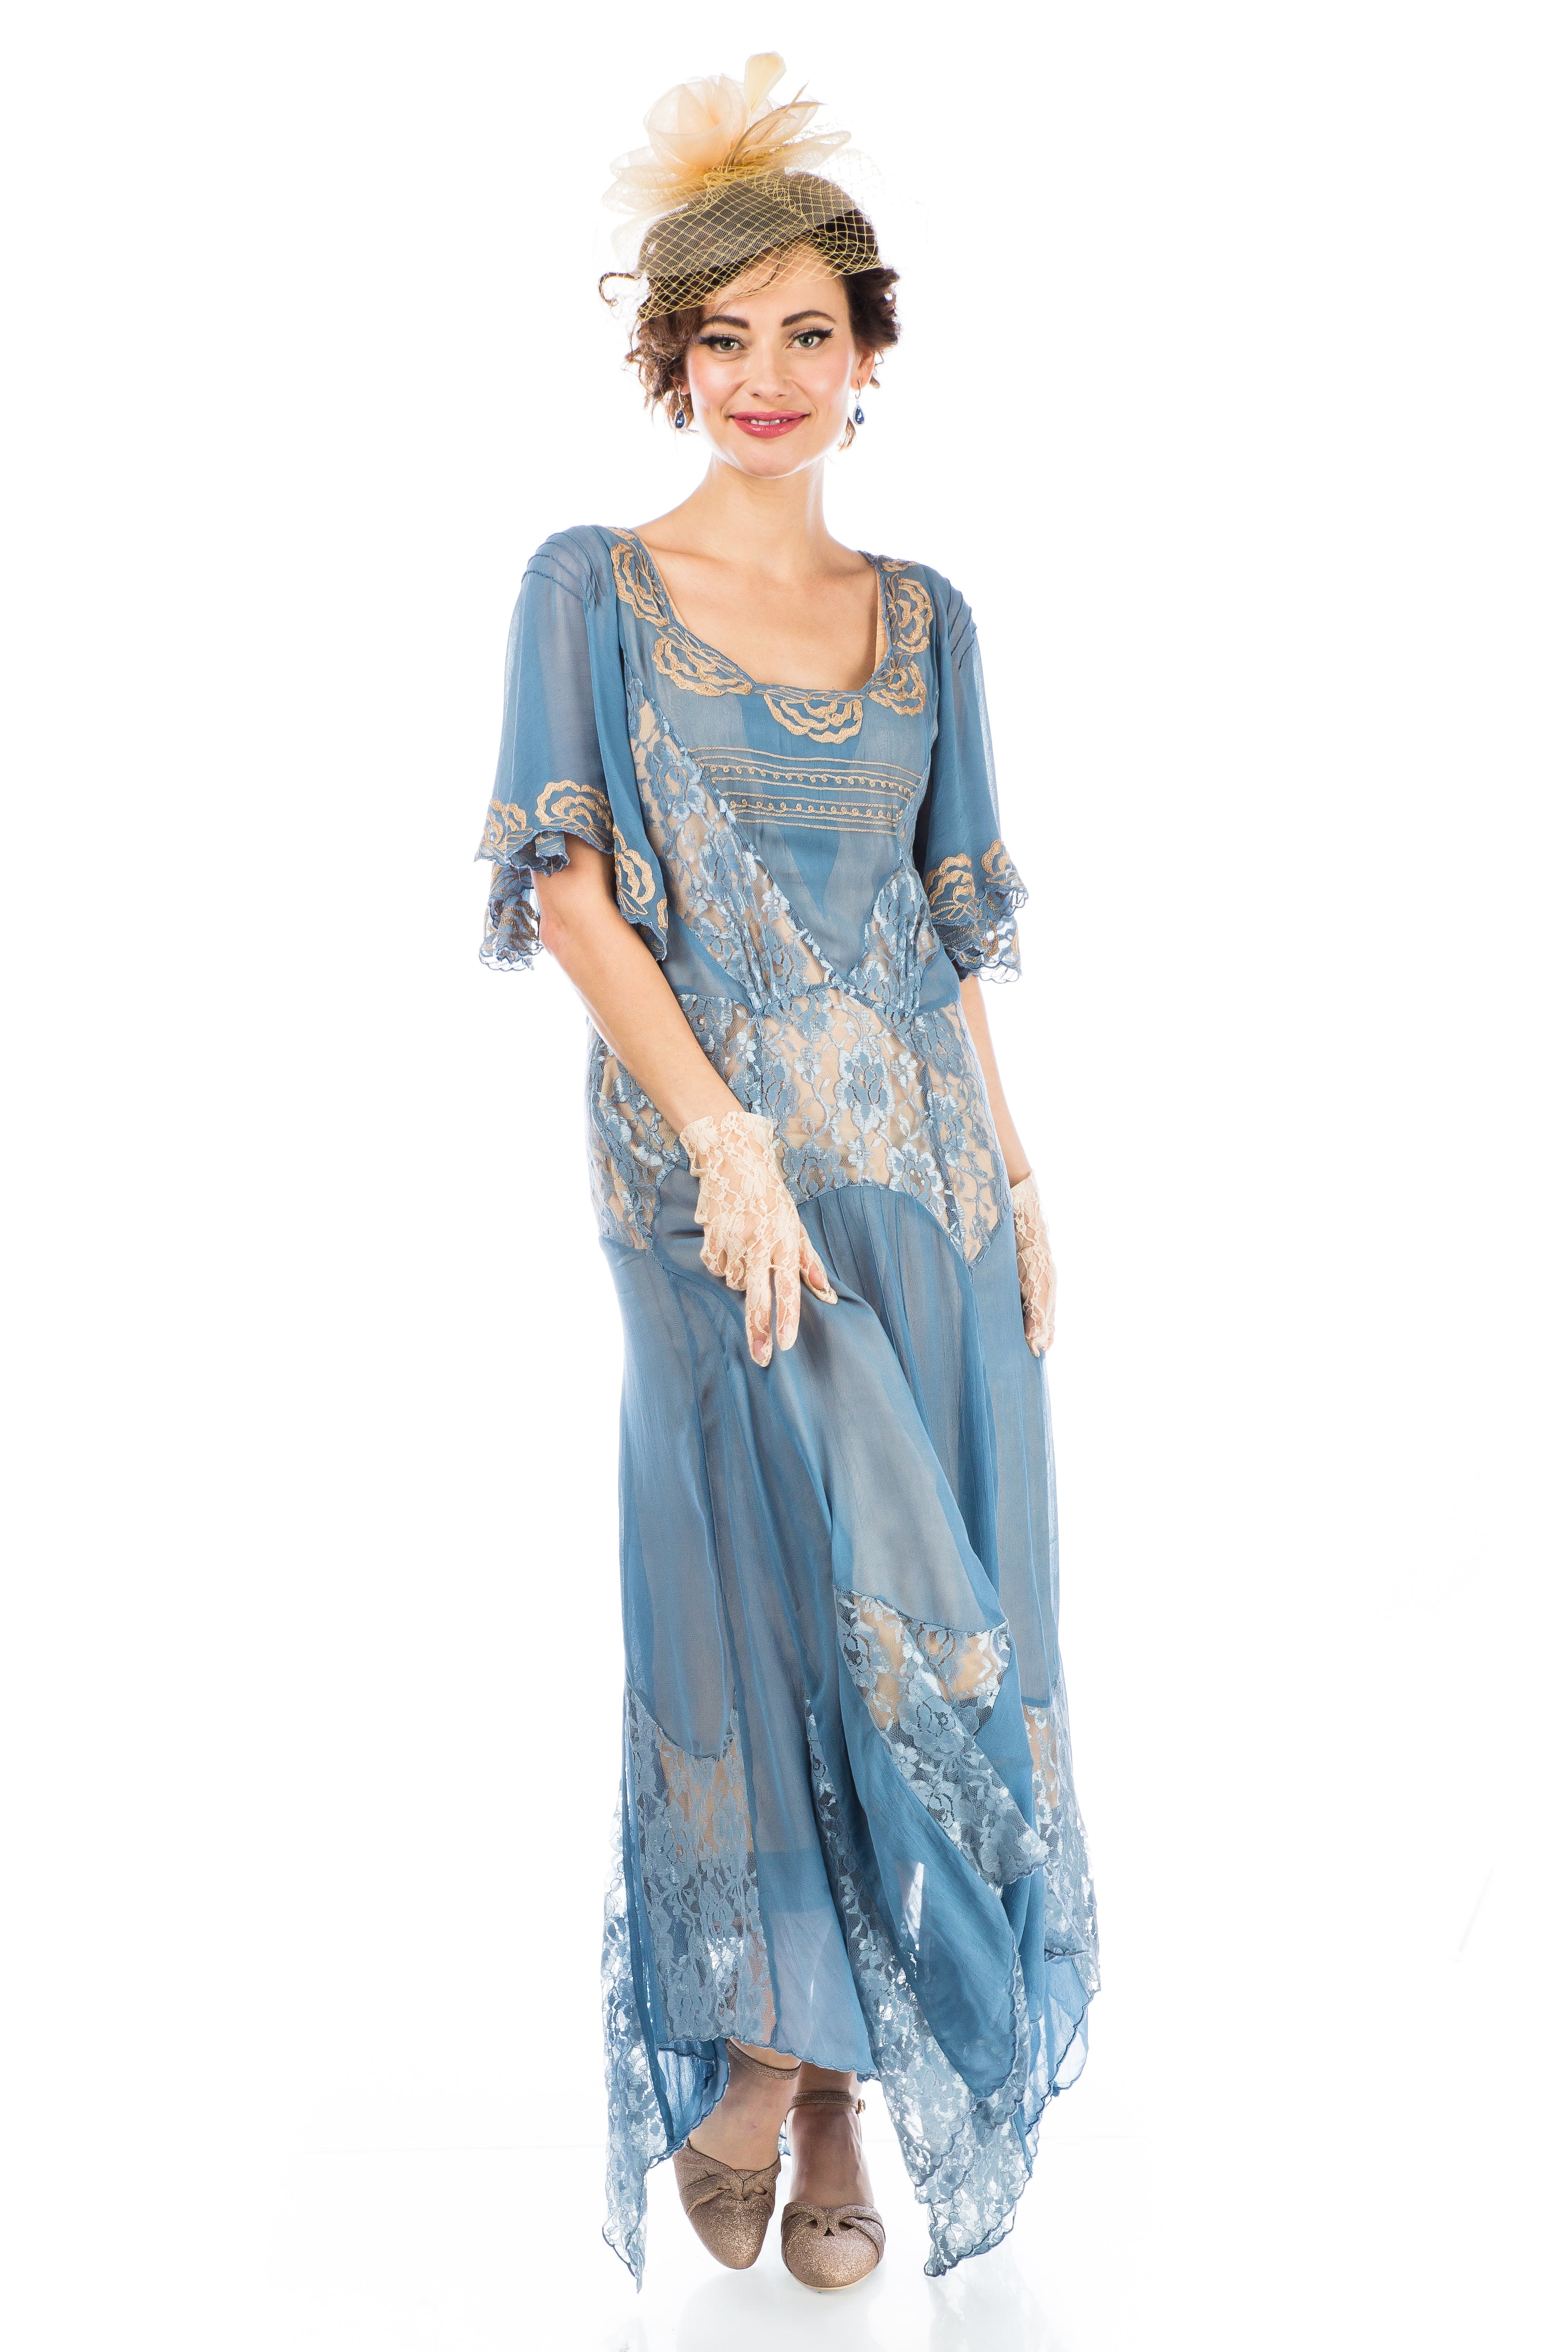 Irene Art Nouveau Style Dress in Blue by Nataya